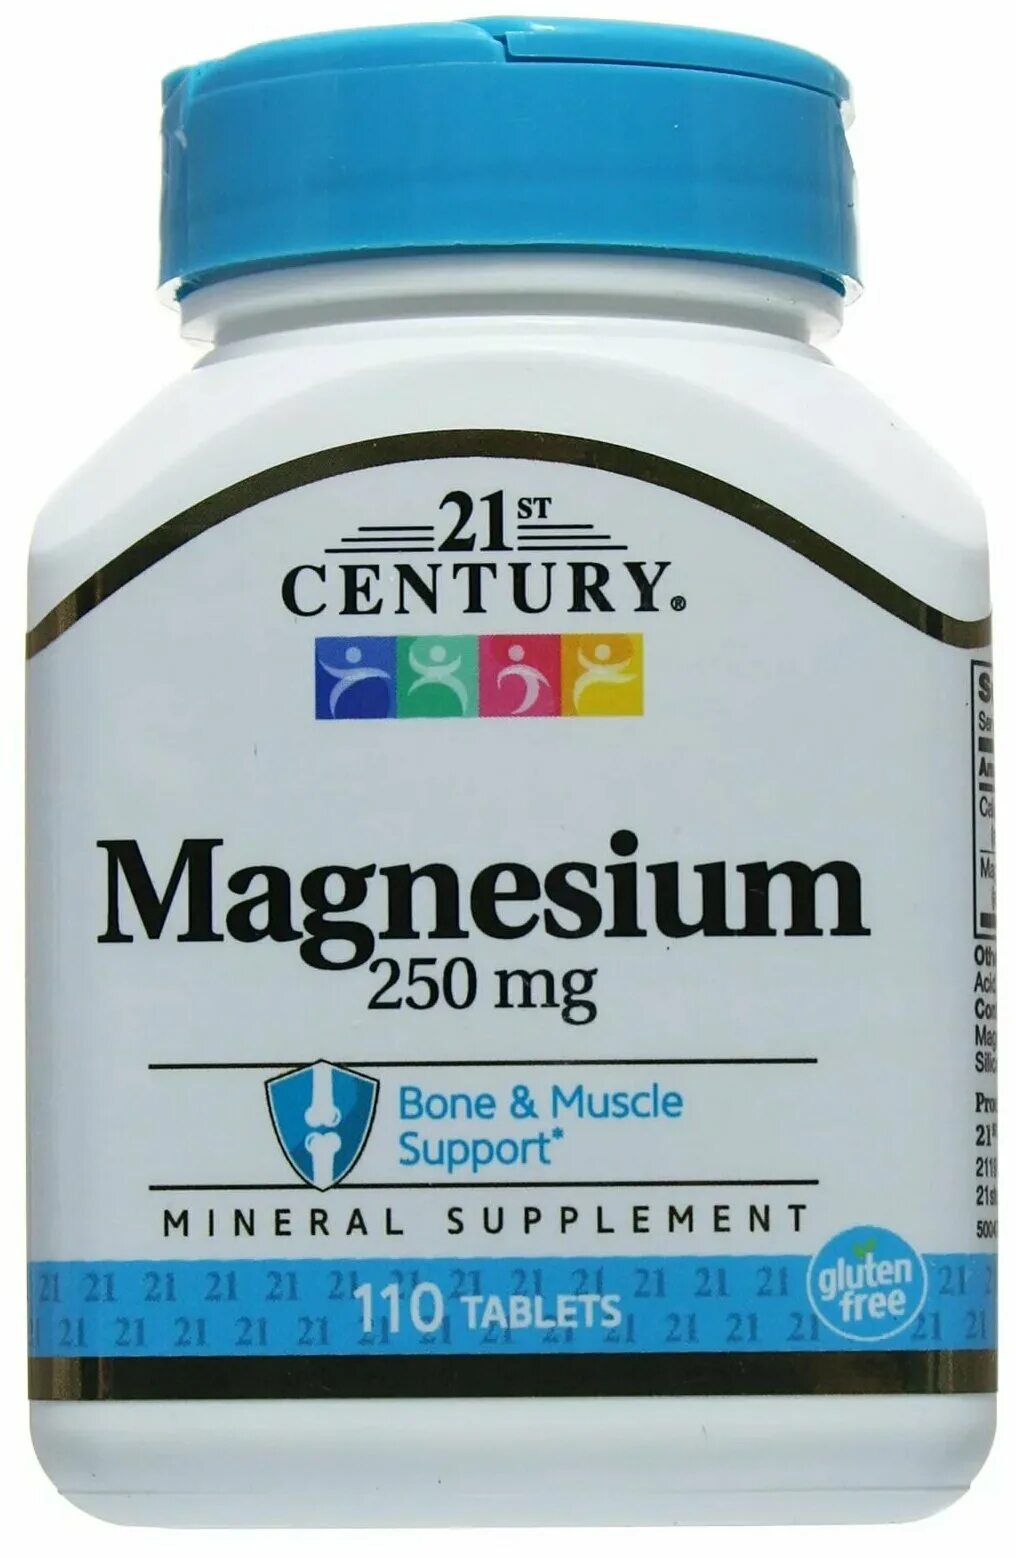 Как правильно принимать витамины магний. 21st Century Magnesium магний 250 мг 110 табл.. Магнезиум в9. Magnesium 250mg Турция. Магнезиум 250.